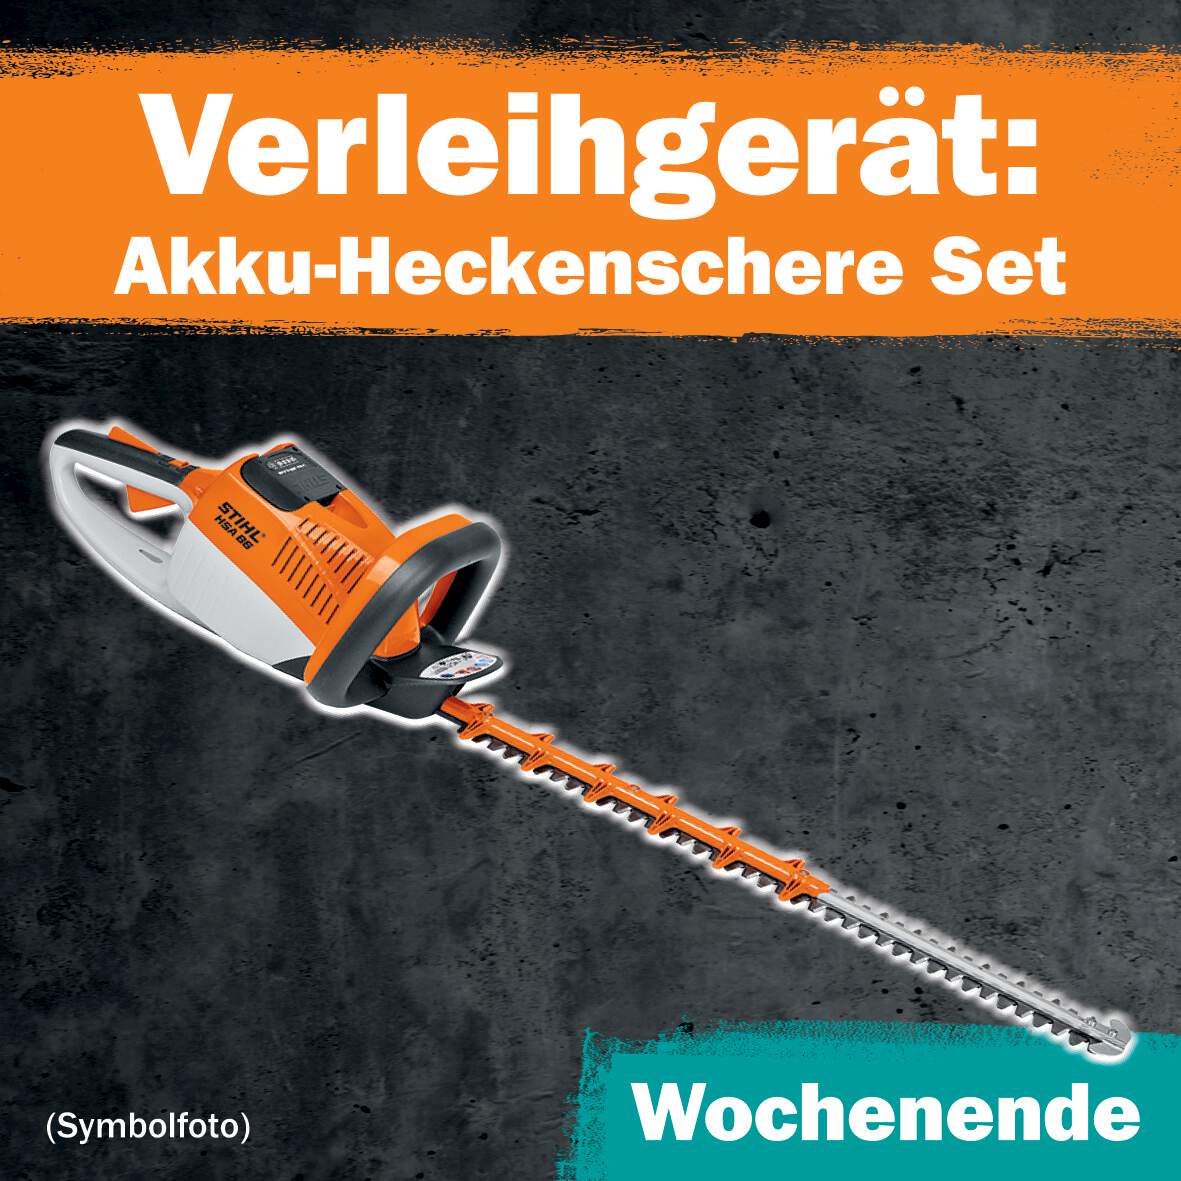 1288685 - Akku-Heckenschere Set 1 WE Leihdauer